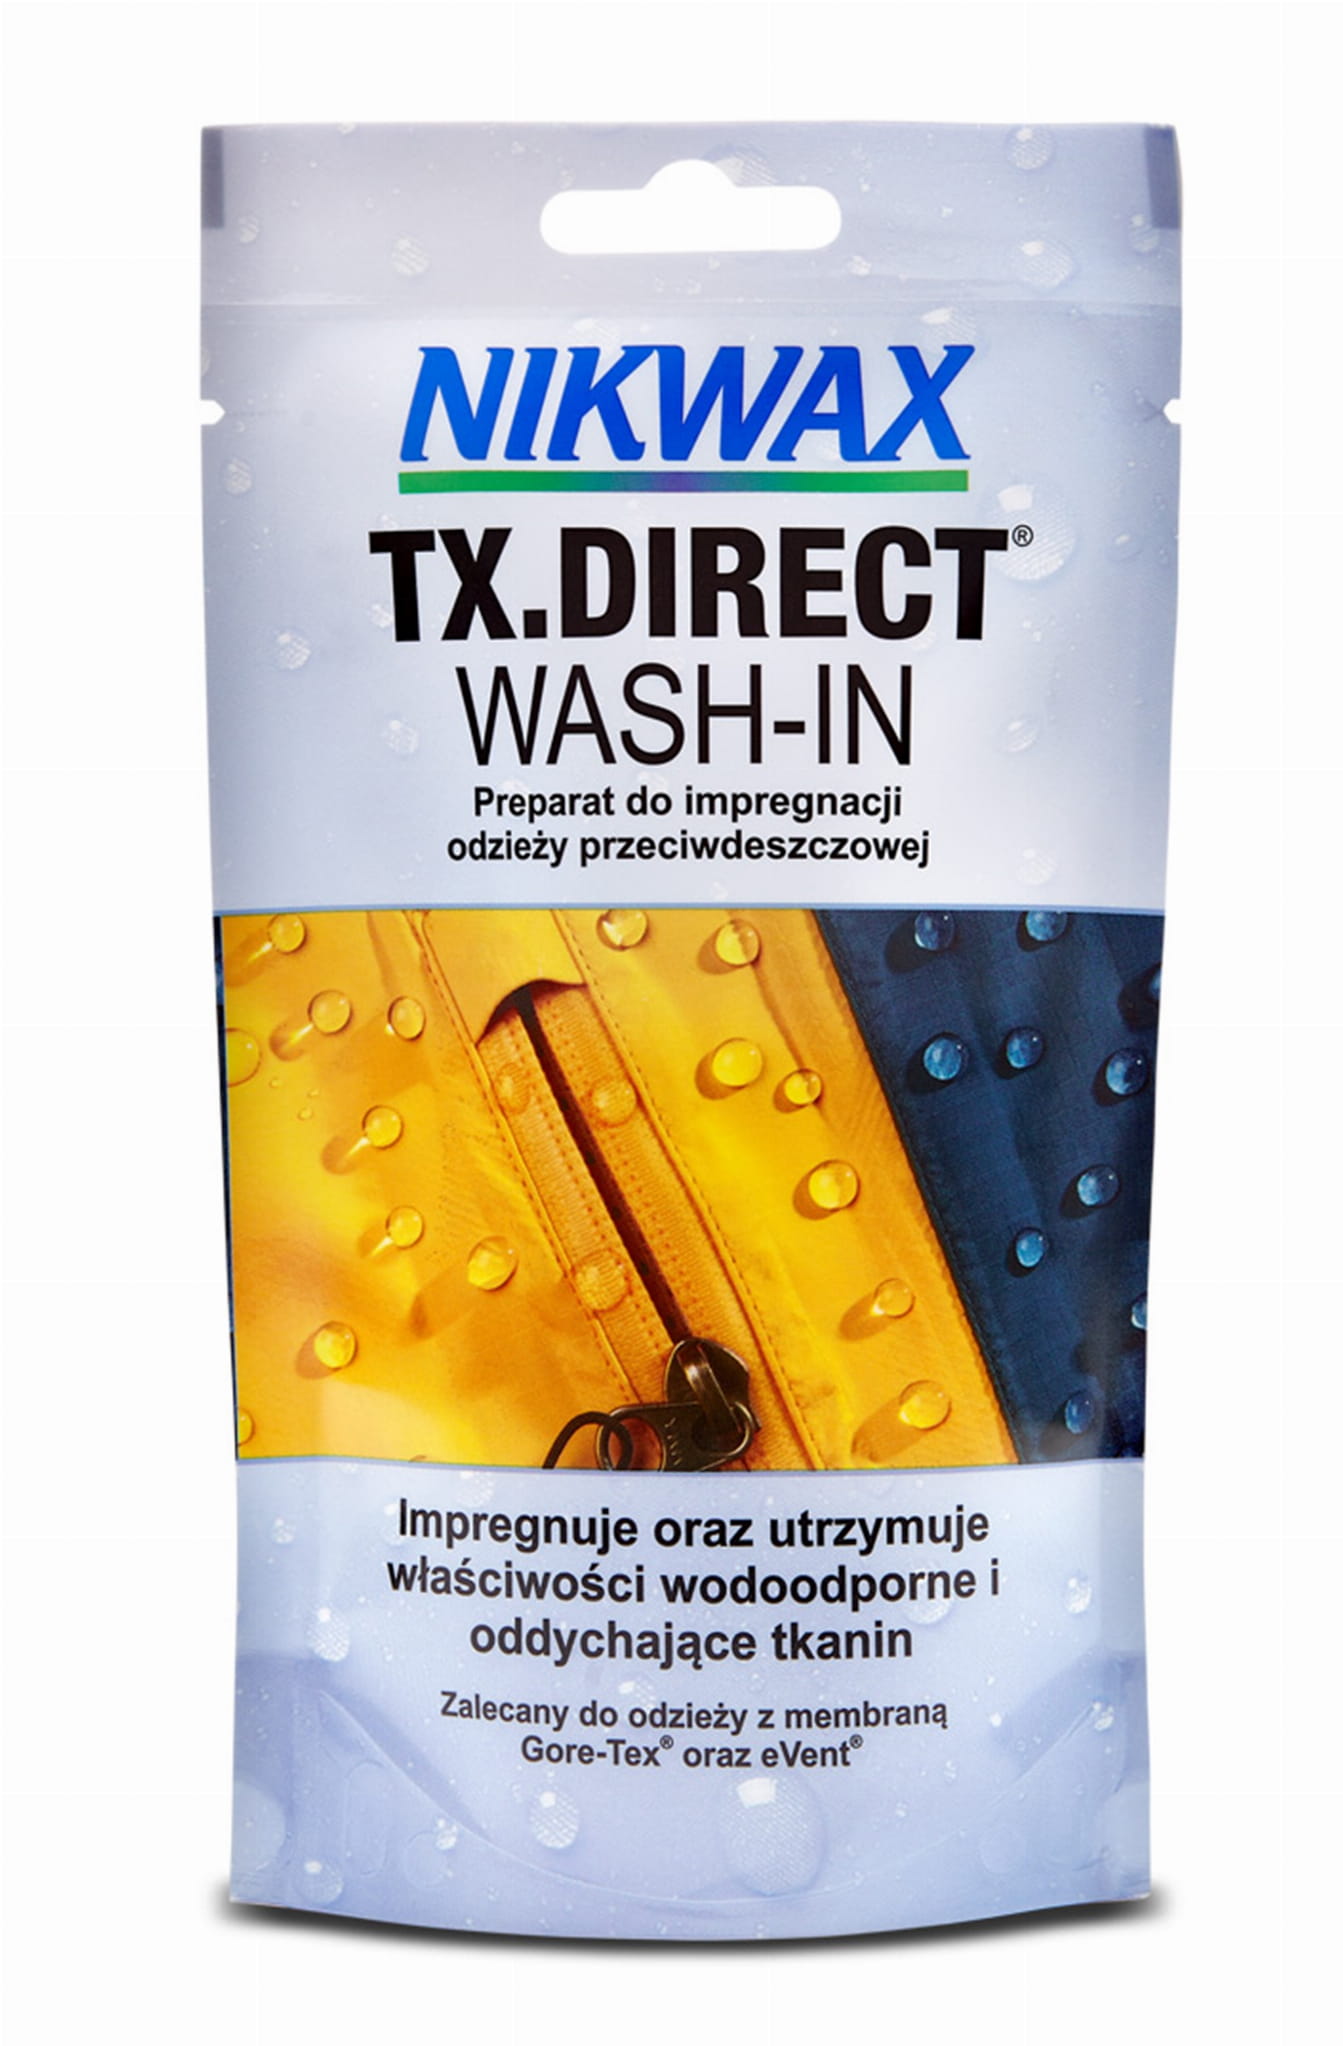 NIKWAX-Tx Direct wash 100ml s. Impregnat do odziezy Nikwax TX miniaturka